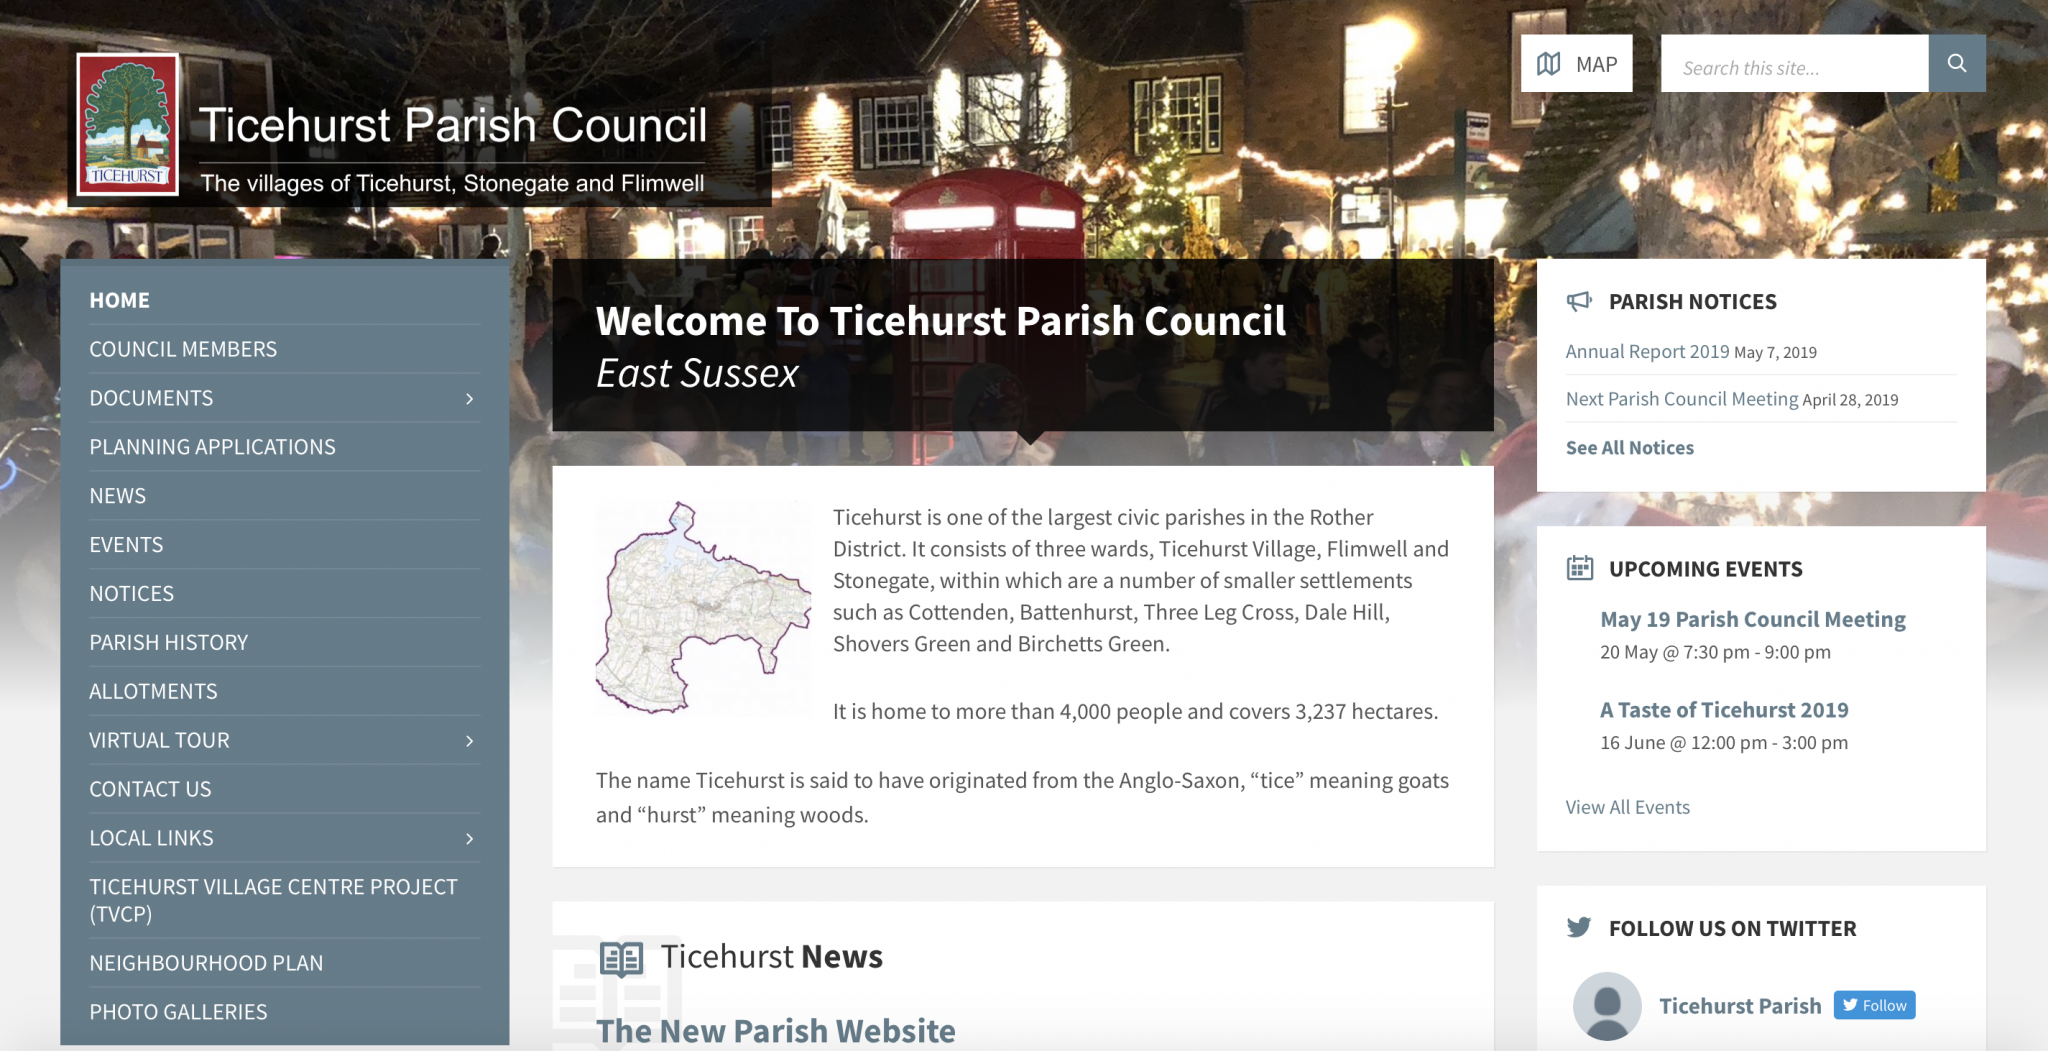 Ticehurst Parish Council Website Design